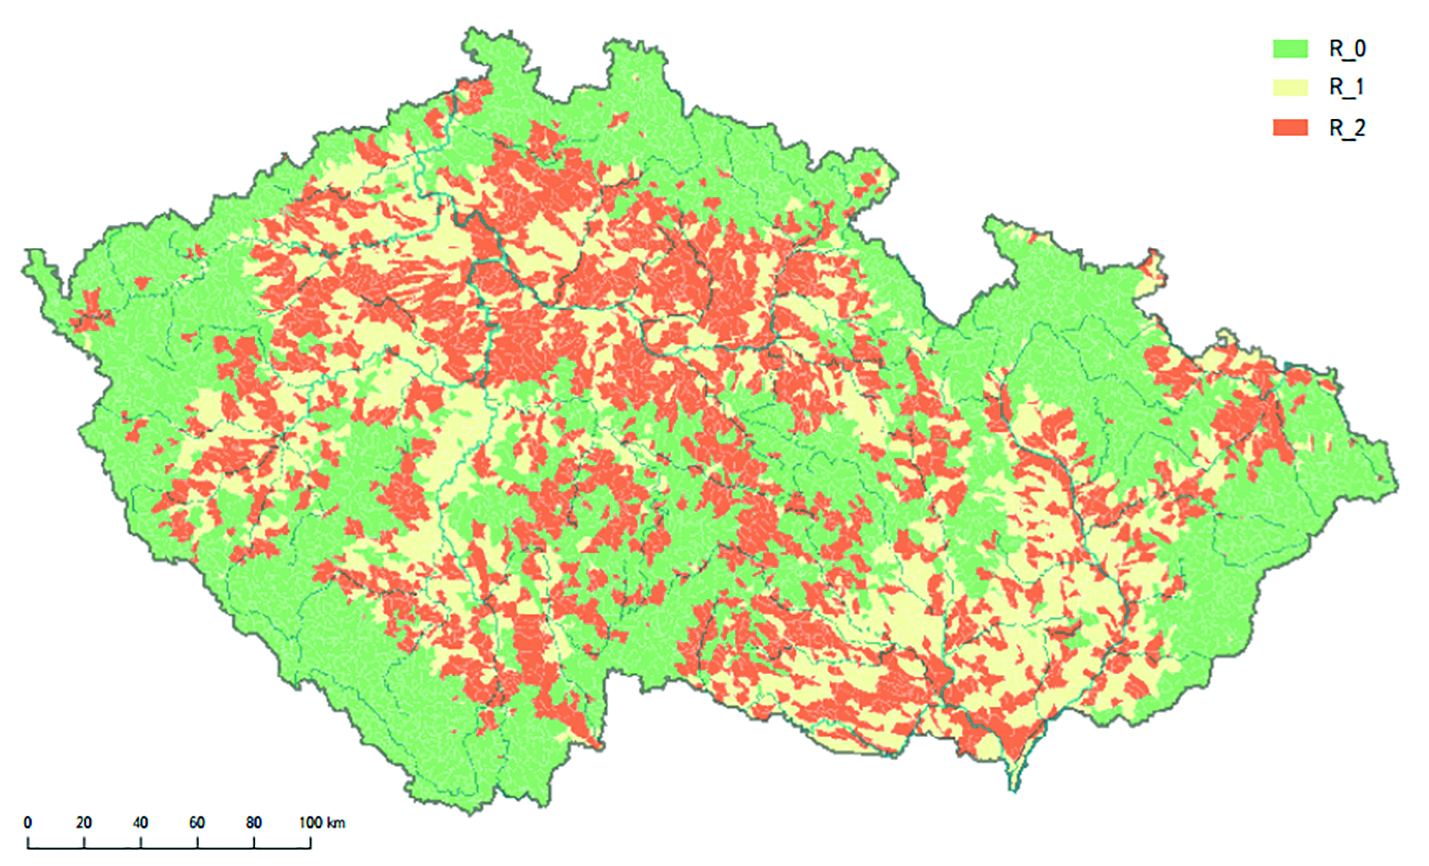 Obr. 4 Kategorizace území ČR podle míry rizika vysychání drobných vodních toků; R_0 - malé riziko, R_1 - střední riziko, R_2 - velké riziko vysychání drobných toků (Zdroj dat: Zahrádková el al. 2015, s. 12)